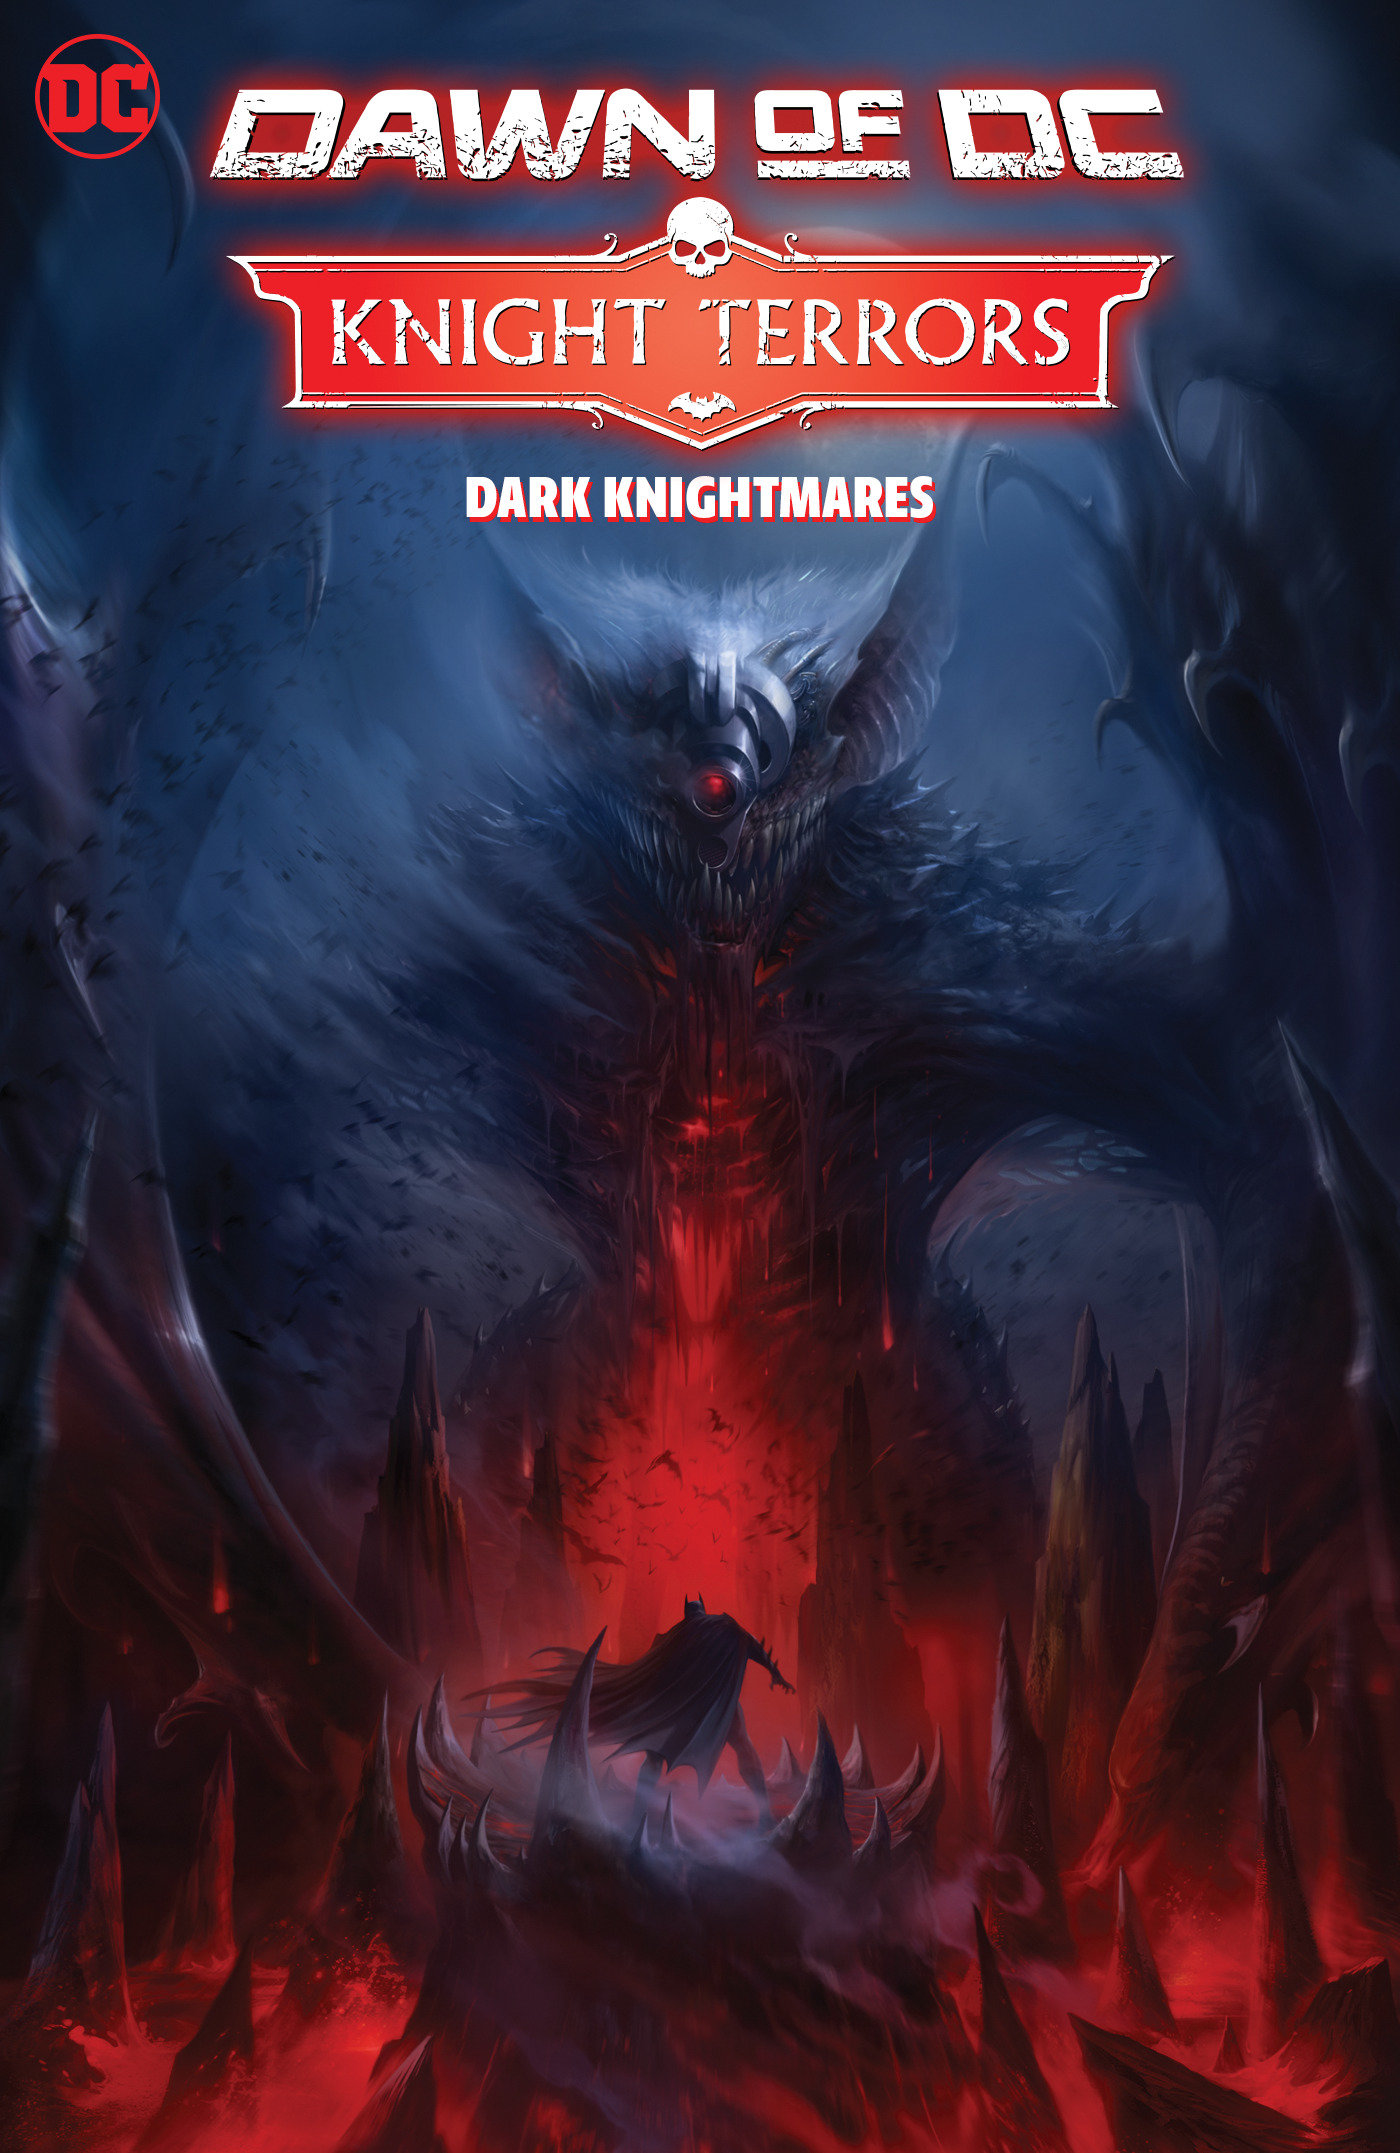 Knight Terrors Dark Knightmares Hardcover